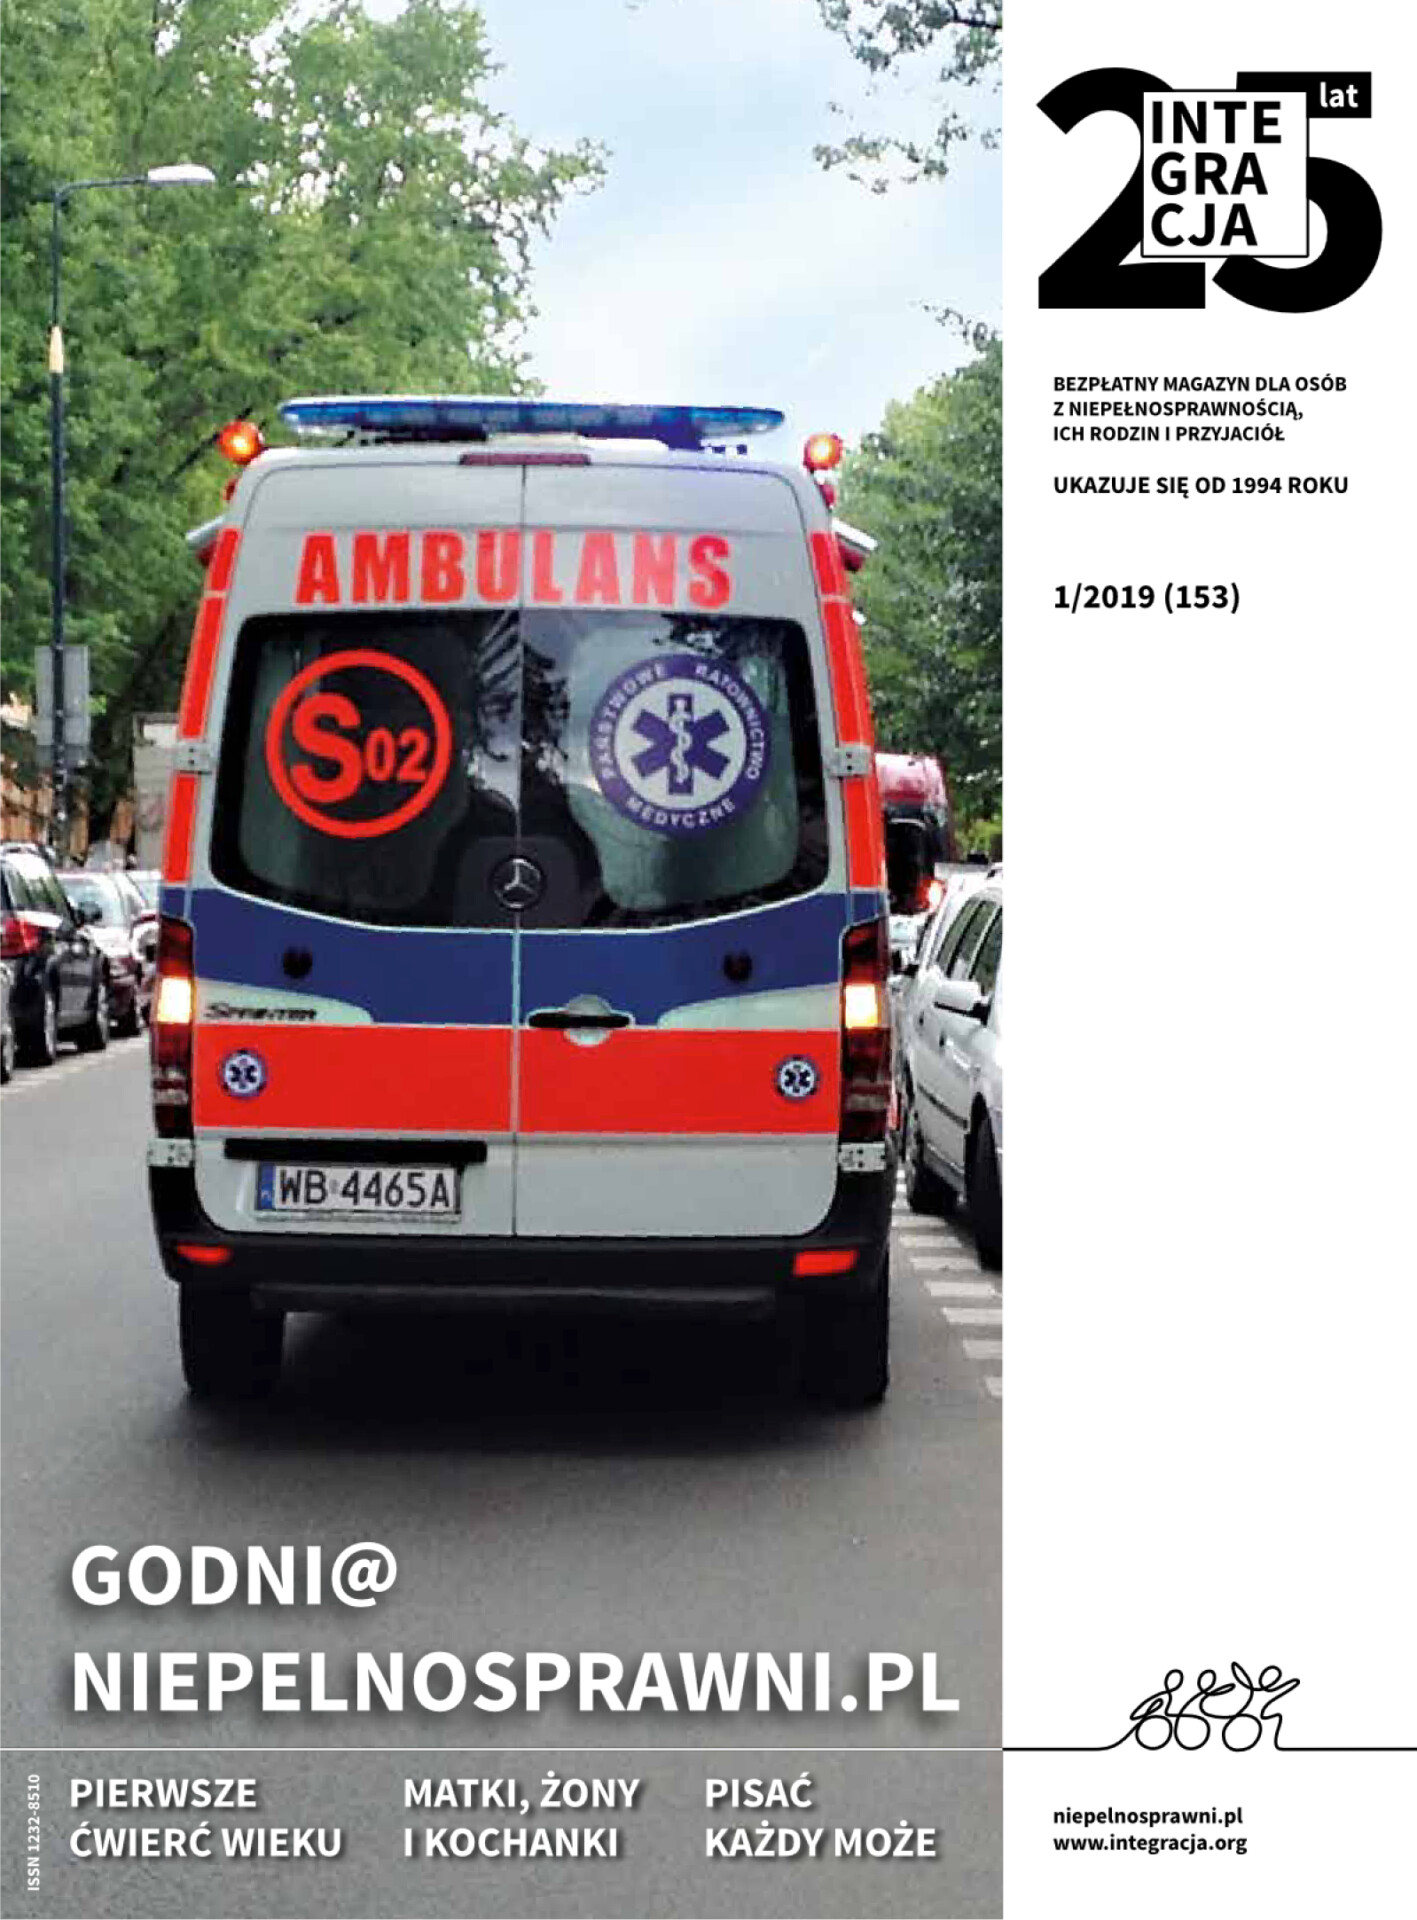 Okładka magazynu Integracja 1/2019. Ambulans na ulicy. Kliknięcie przekierowuje do całego magazynu w PDF-ie dostępnym.